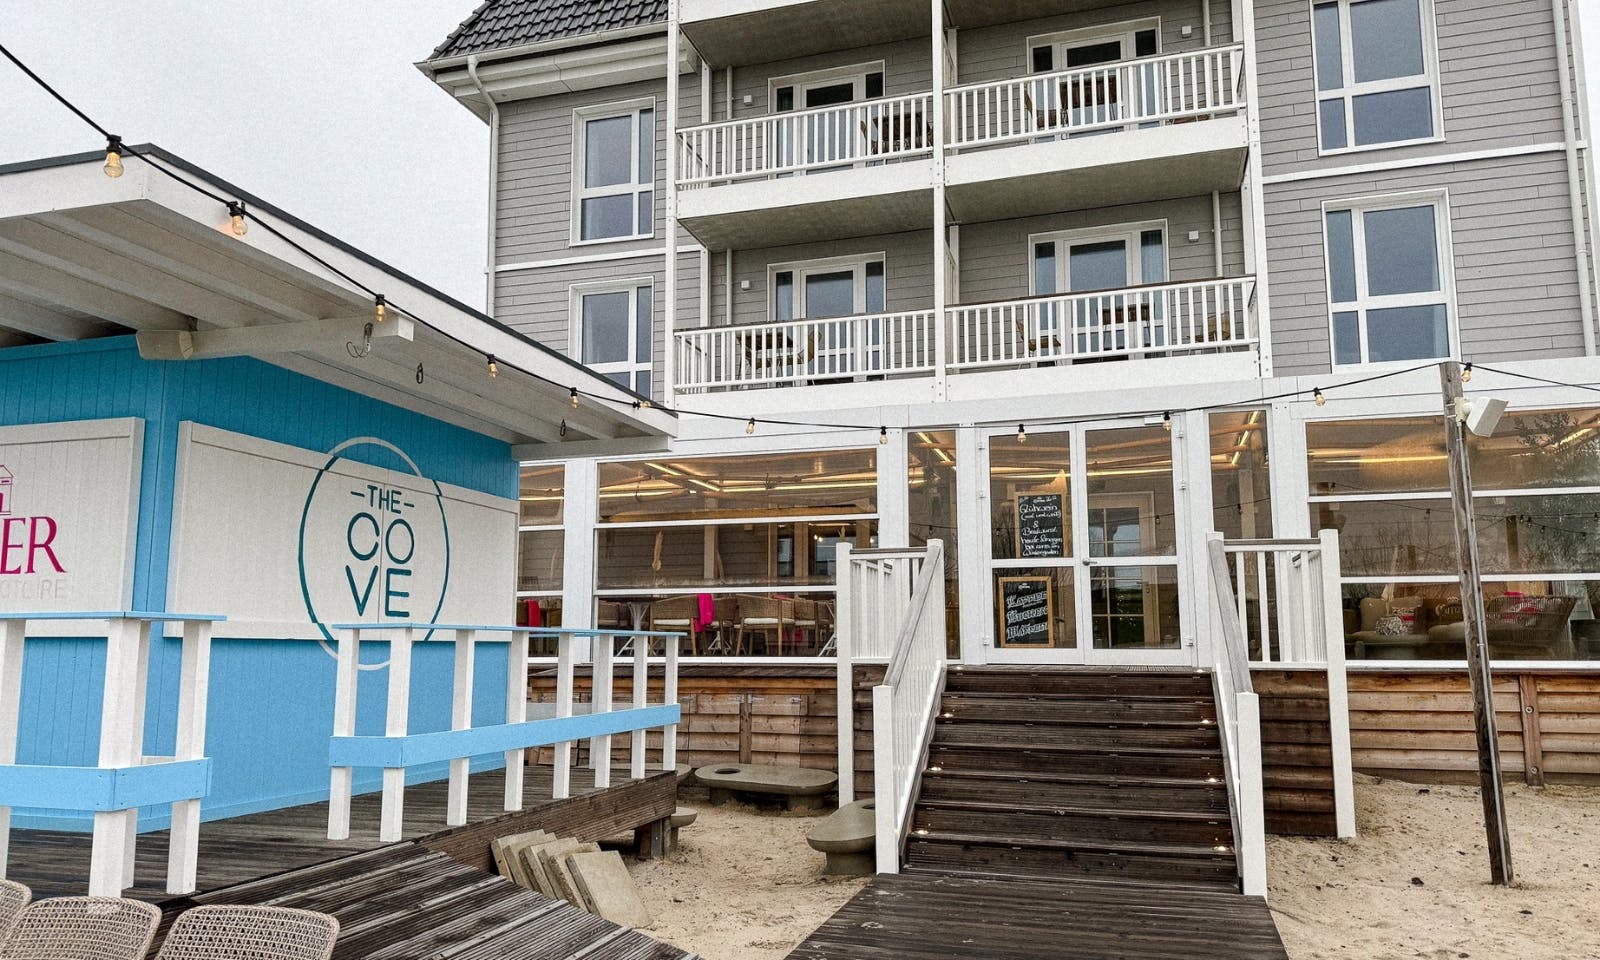 Restaurant The Cove: Kalifornisches Flair trifft Nordseeluft in Büsum